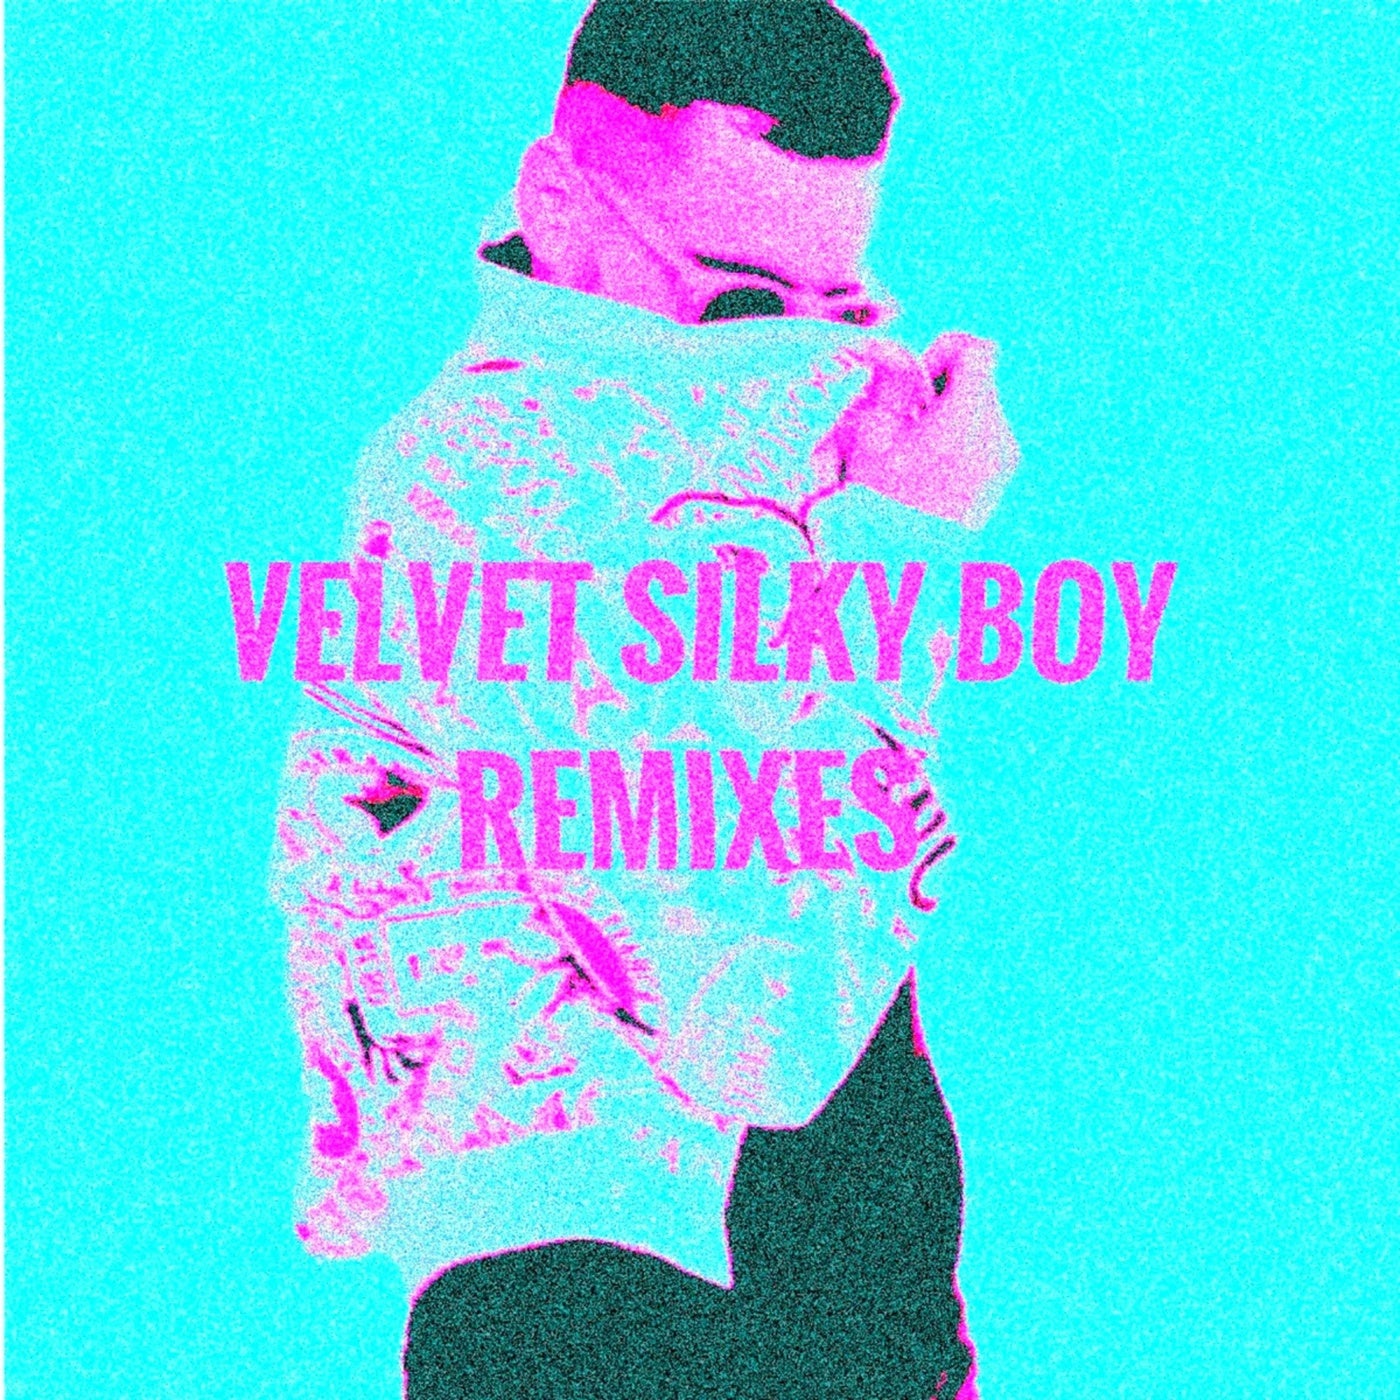 Velvet Silky Boy - Remixes